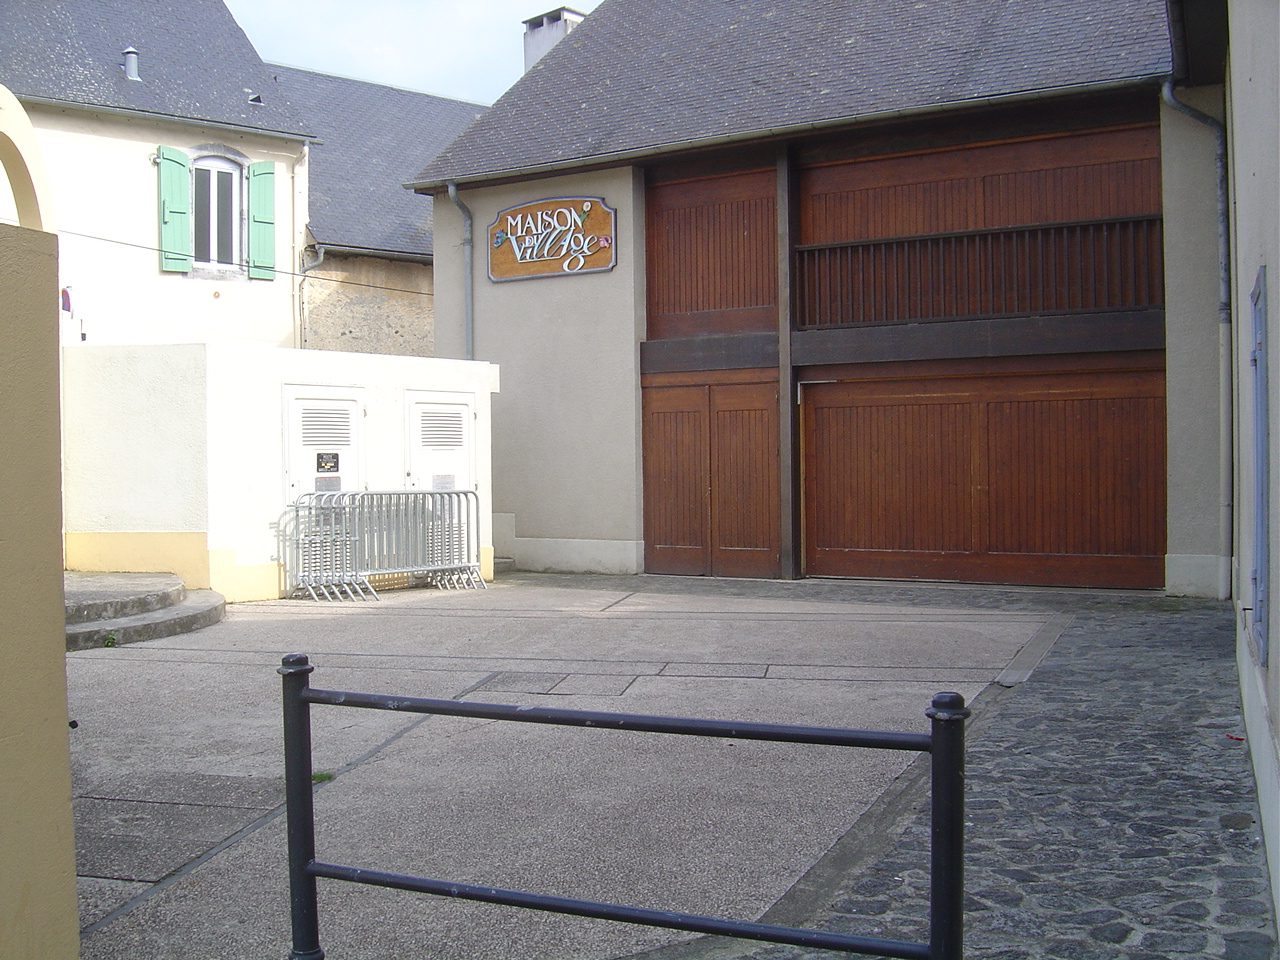 Salle des fetes, Gerde, France